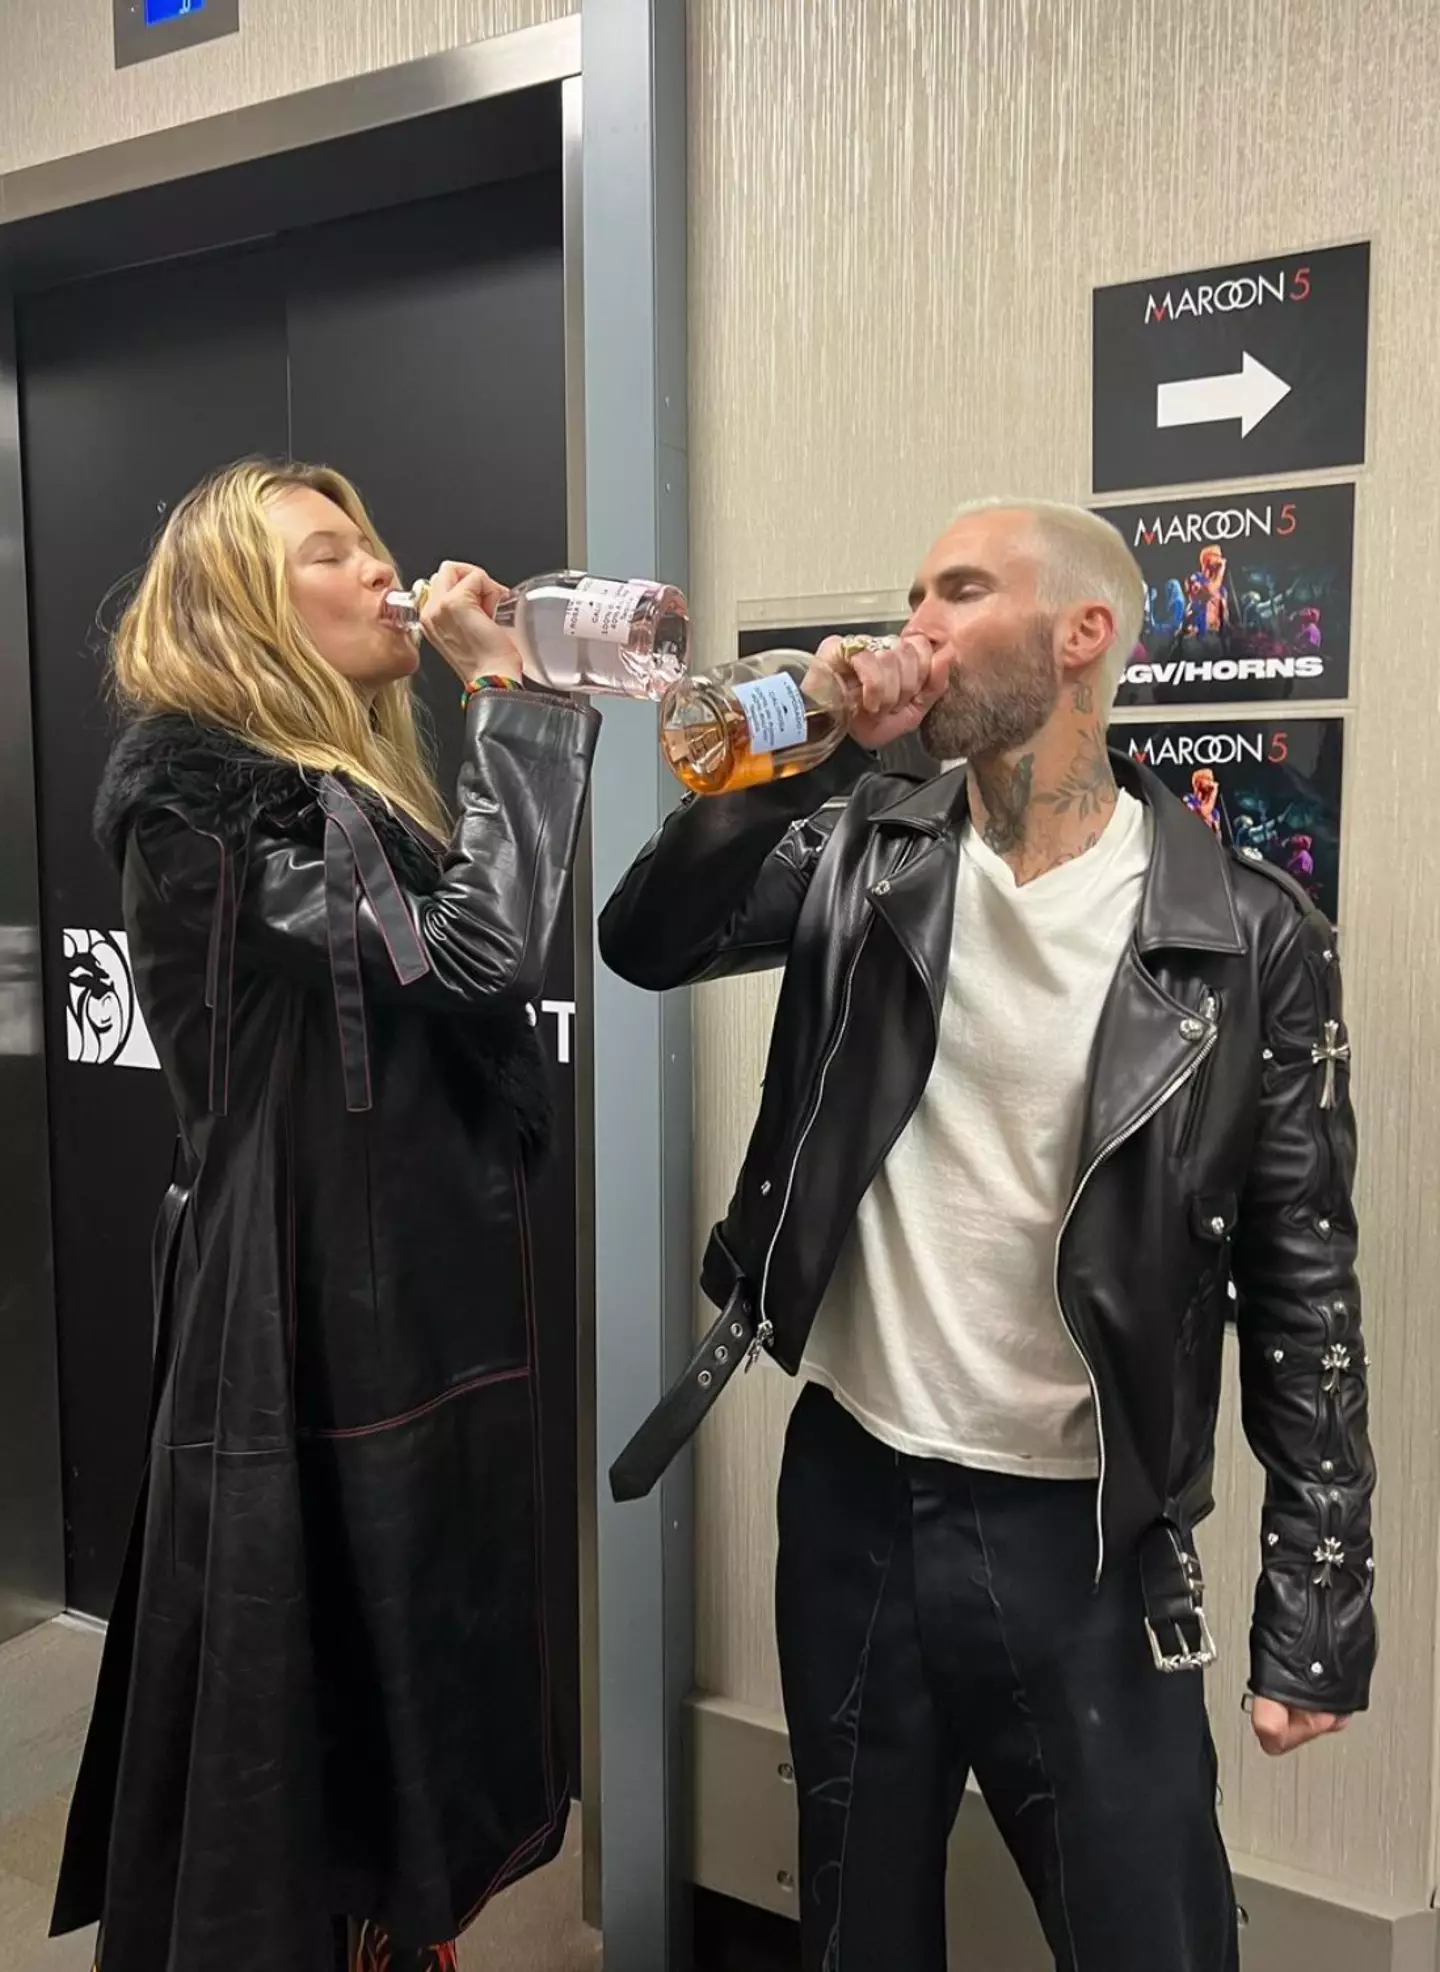 Behati helped her husband celebrate the Maroon 5 residency. Instagram/@behatiprinsloo